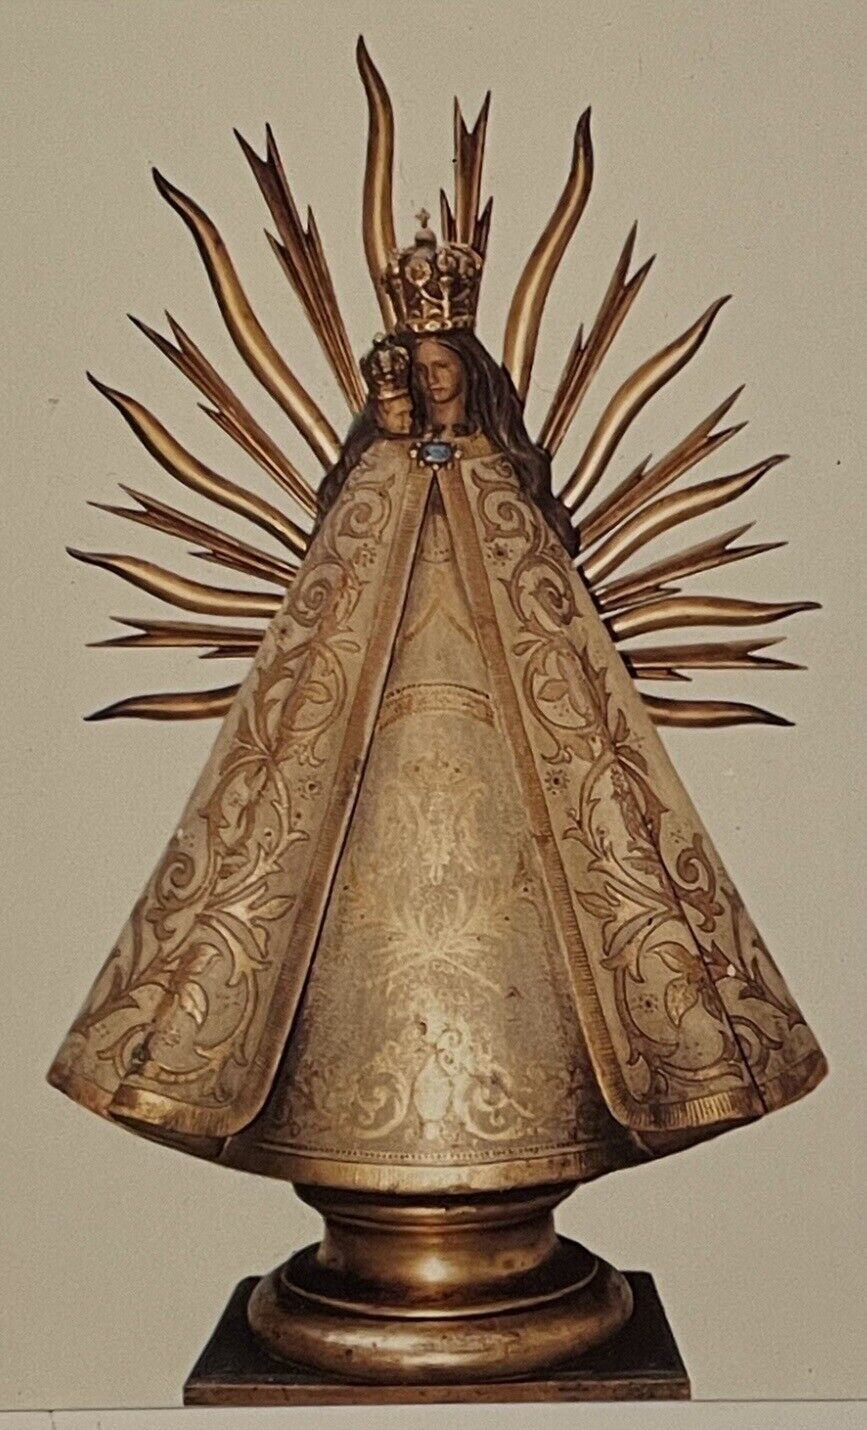 Nuestra Señora Bien Aparecida Virgin Mary Madonna Child Religious Card Spain